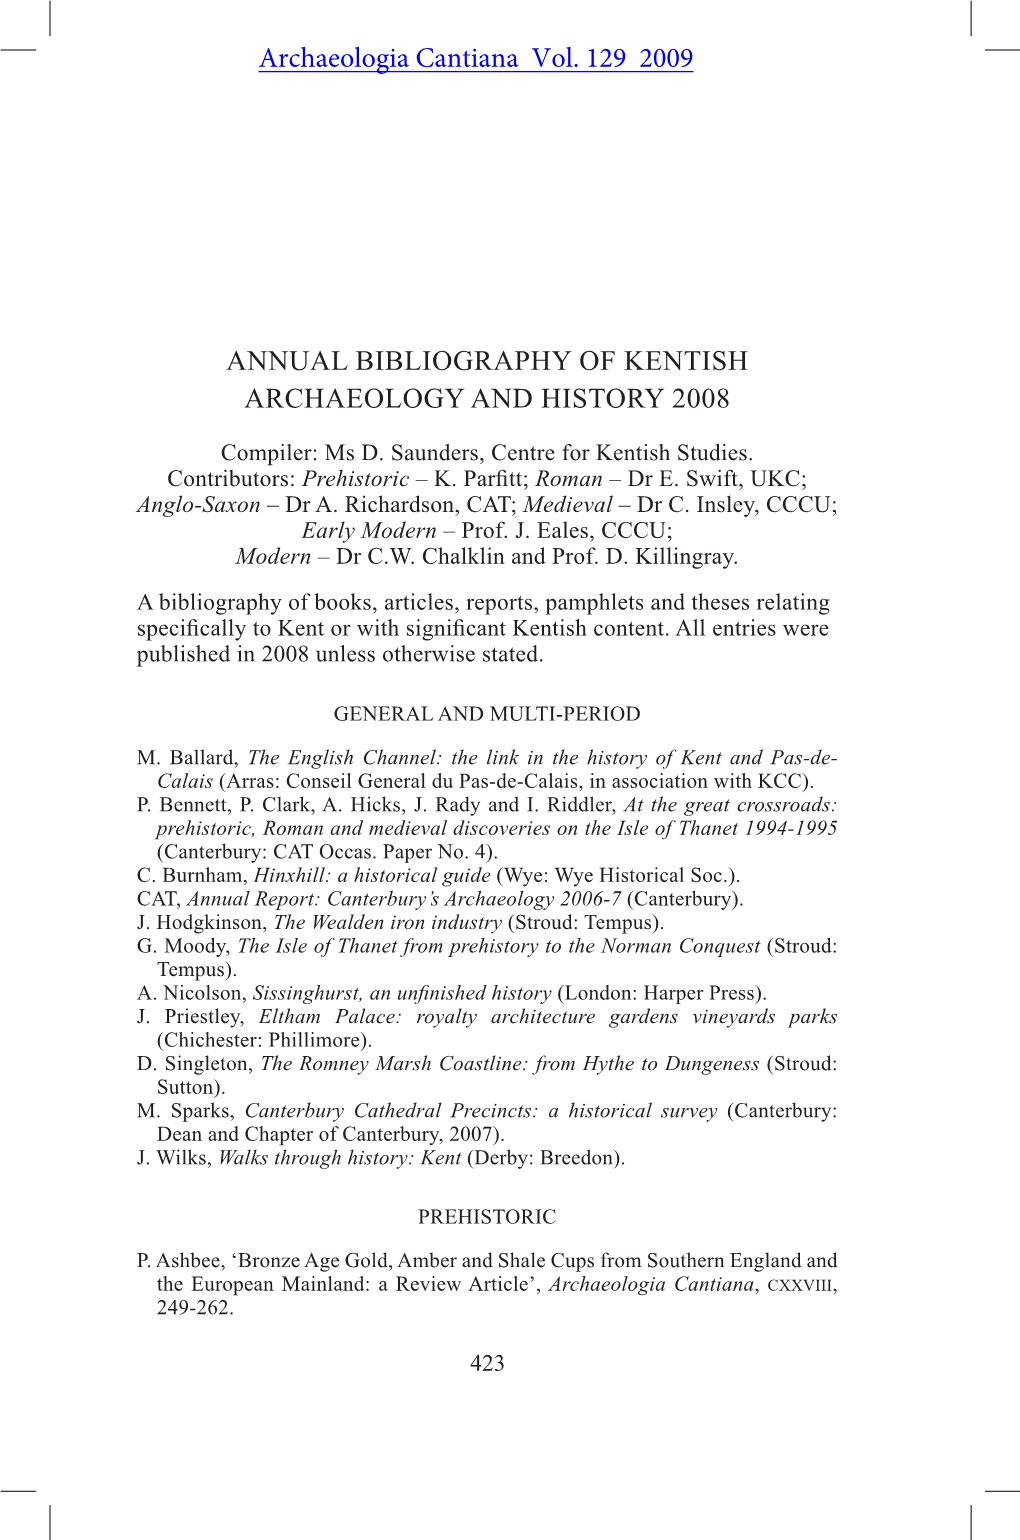 Kentish Bibliography 2008